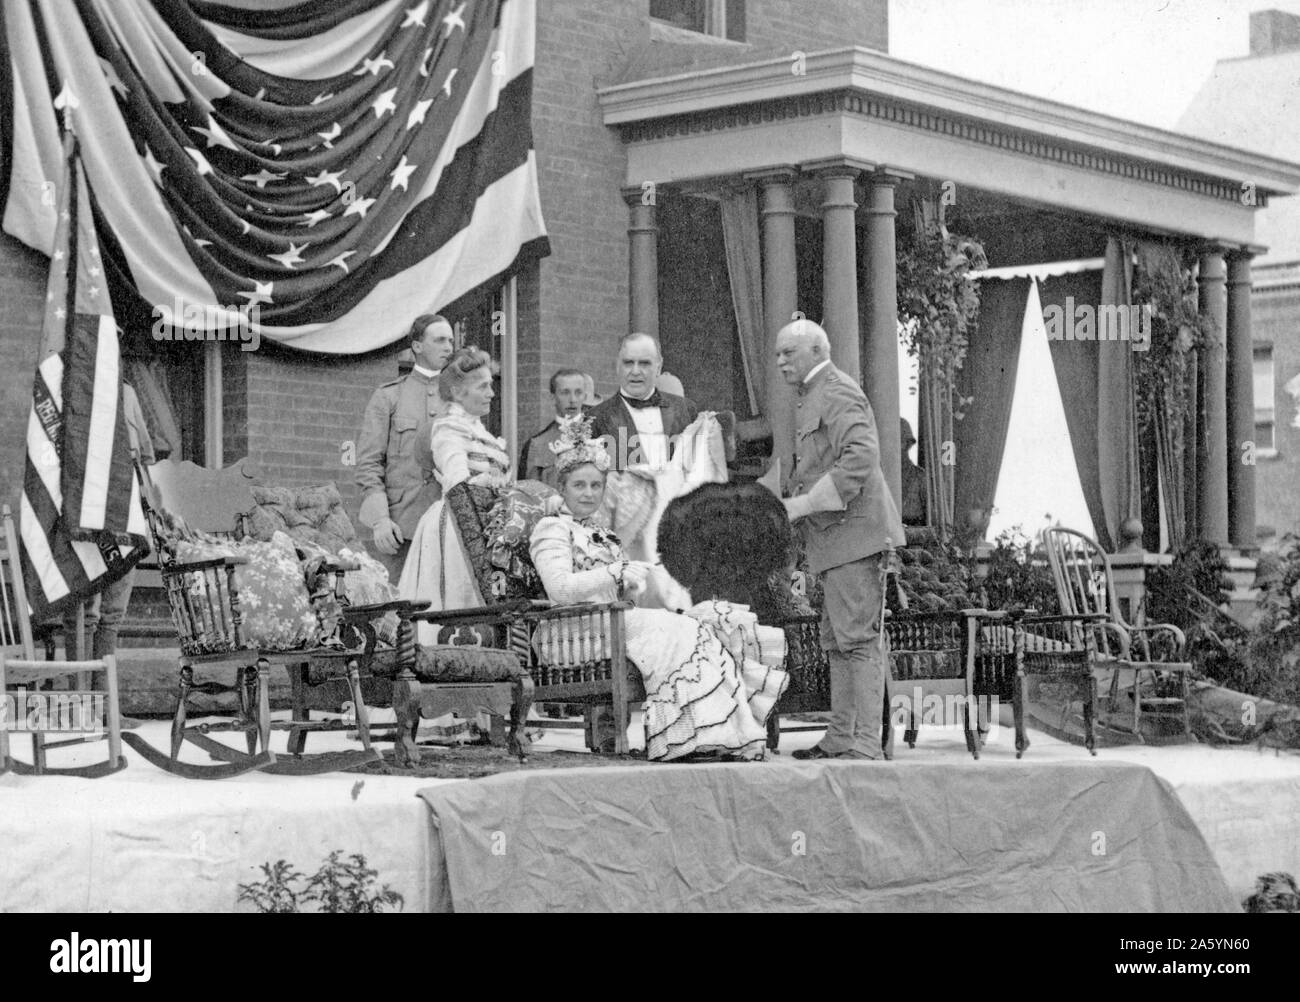 Präsident William McKinley und die erste Dame 1899. Plattsburgh Kasernen, New York. Unbekannt Stockfoto